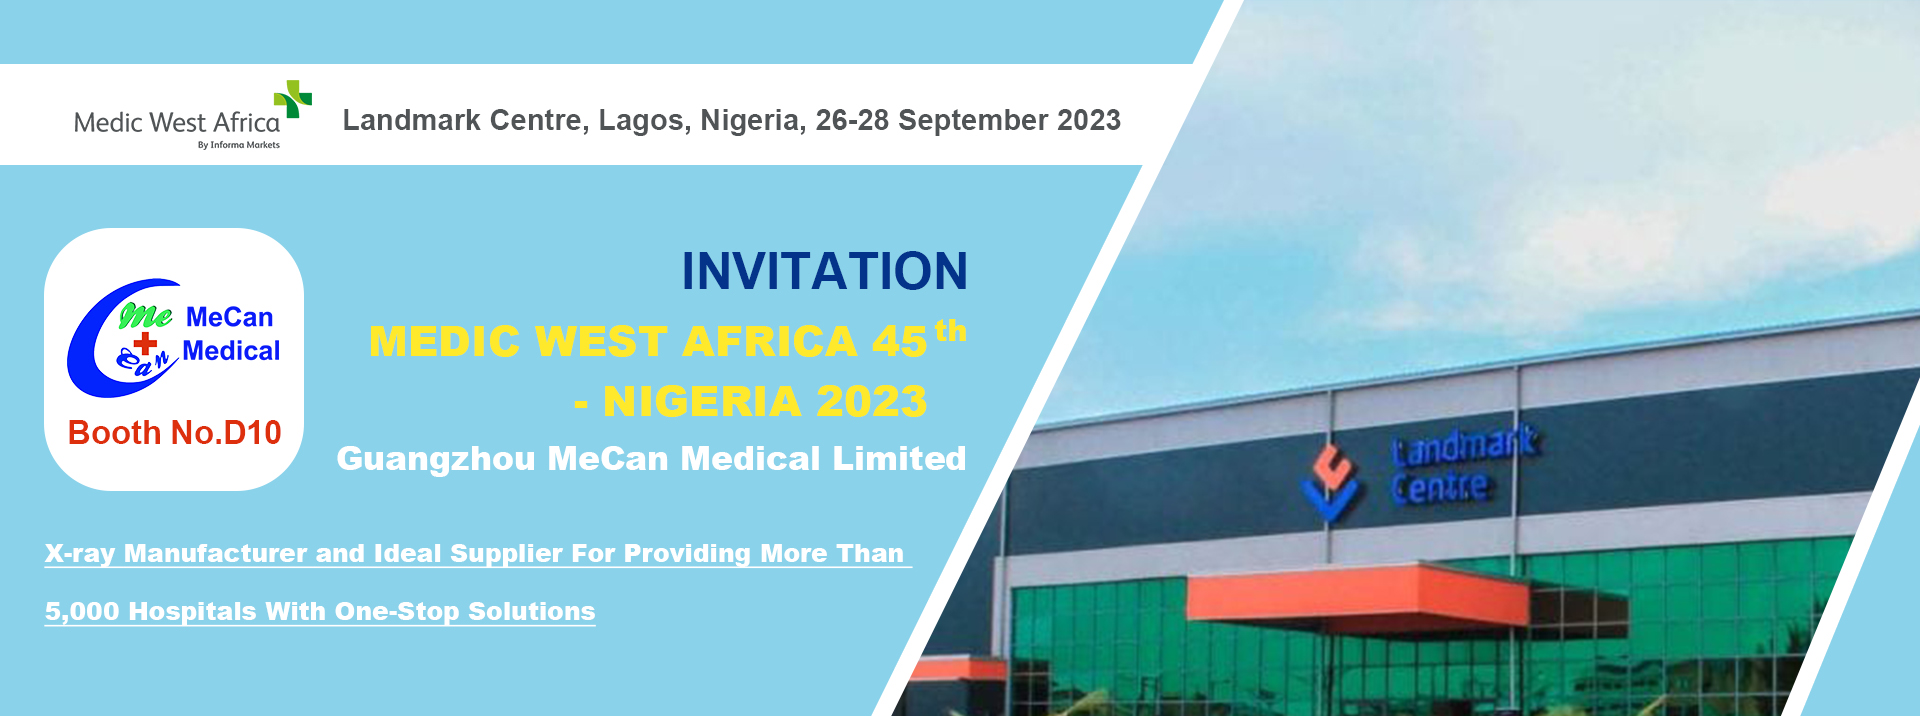 MeCan Medical у Medic West Africa 45th у Нігерыі